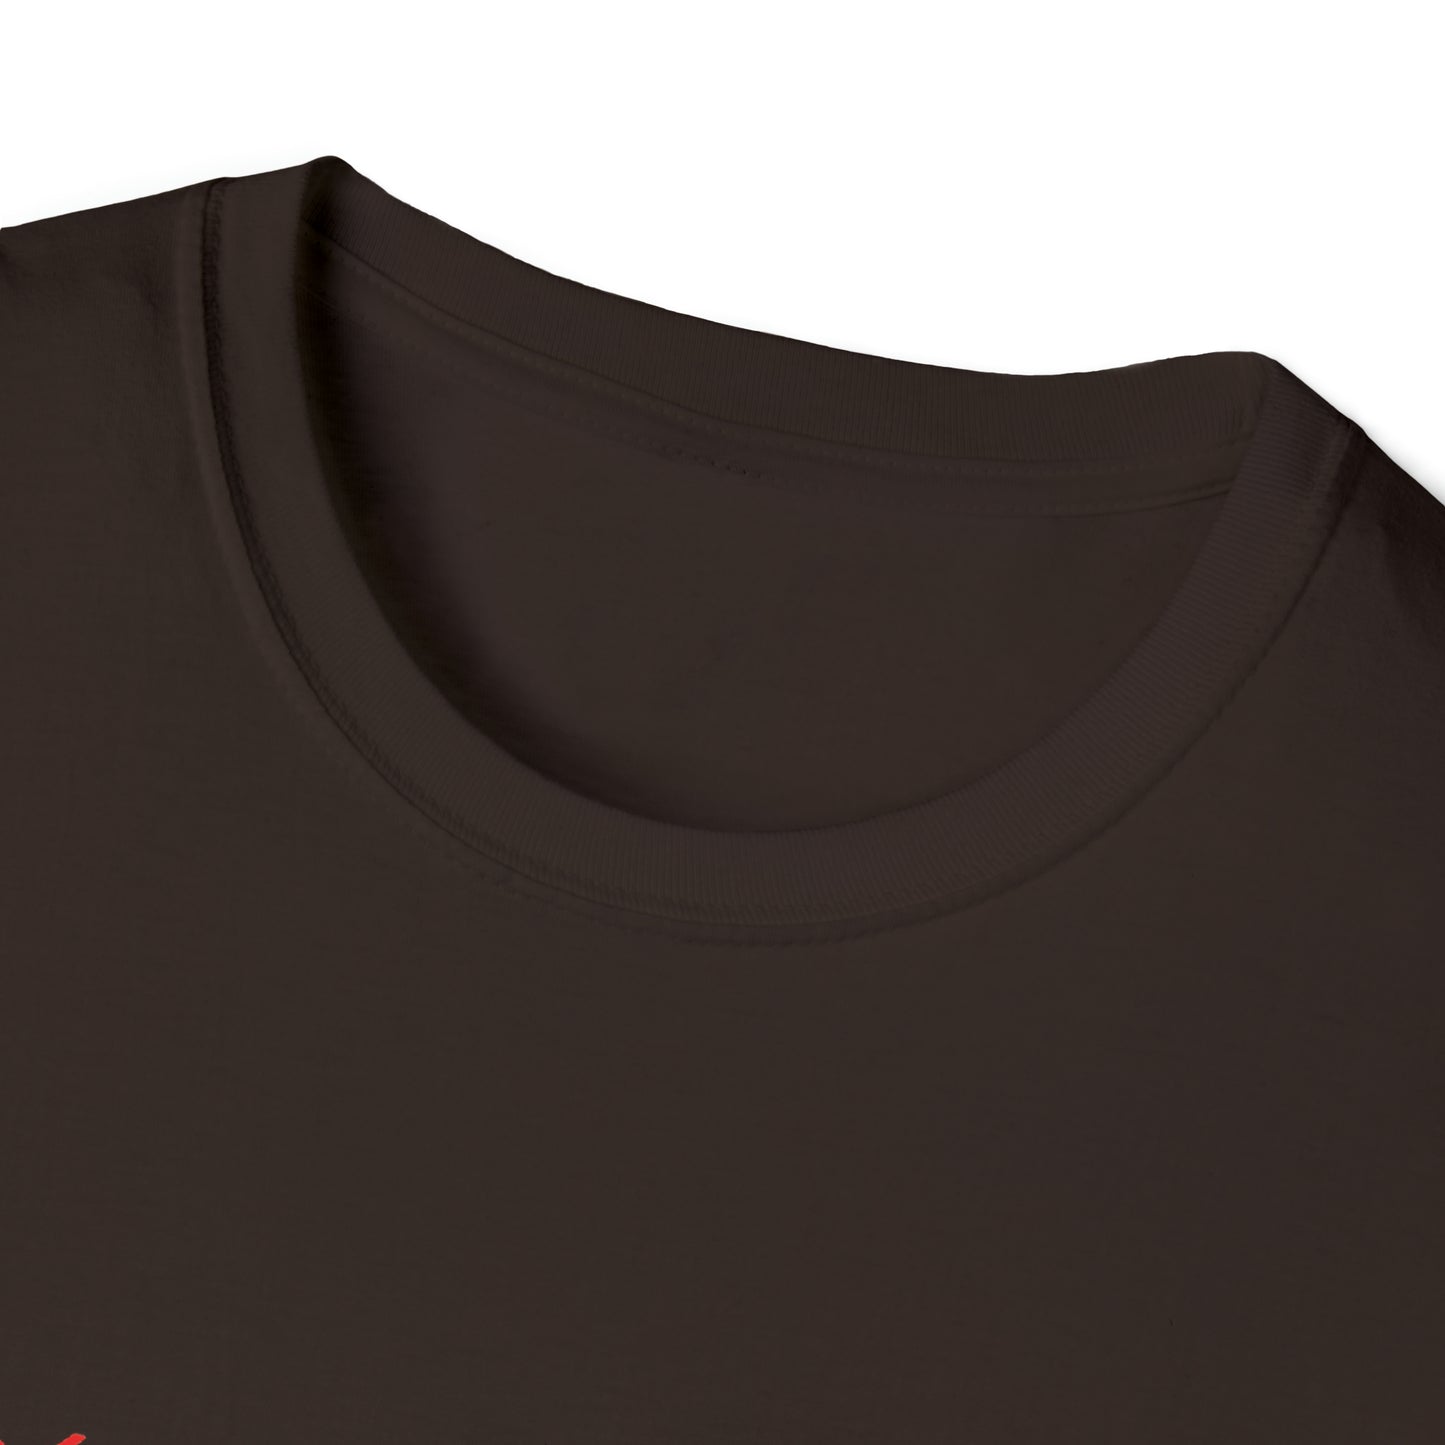 IFOL Camiseta unisex de estilo suave